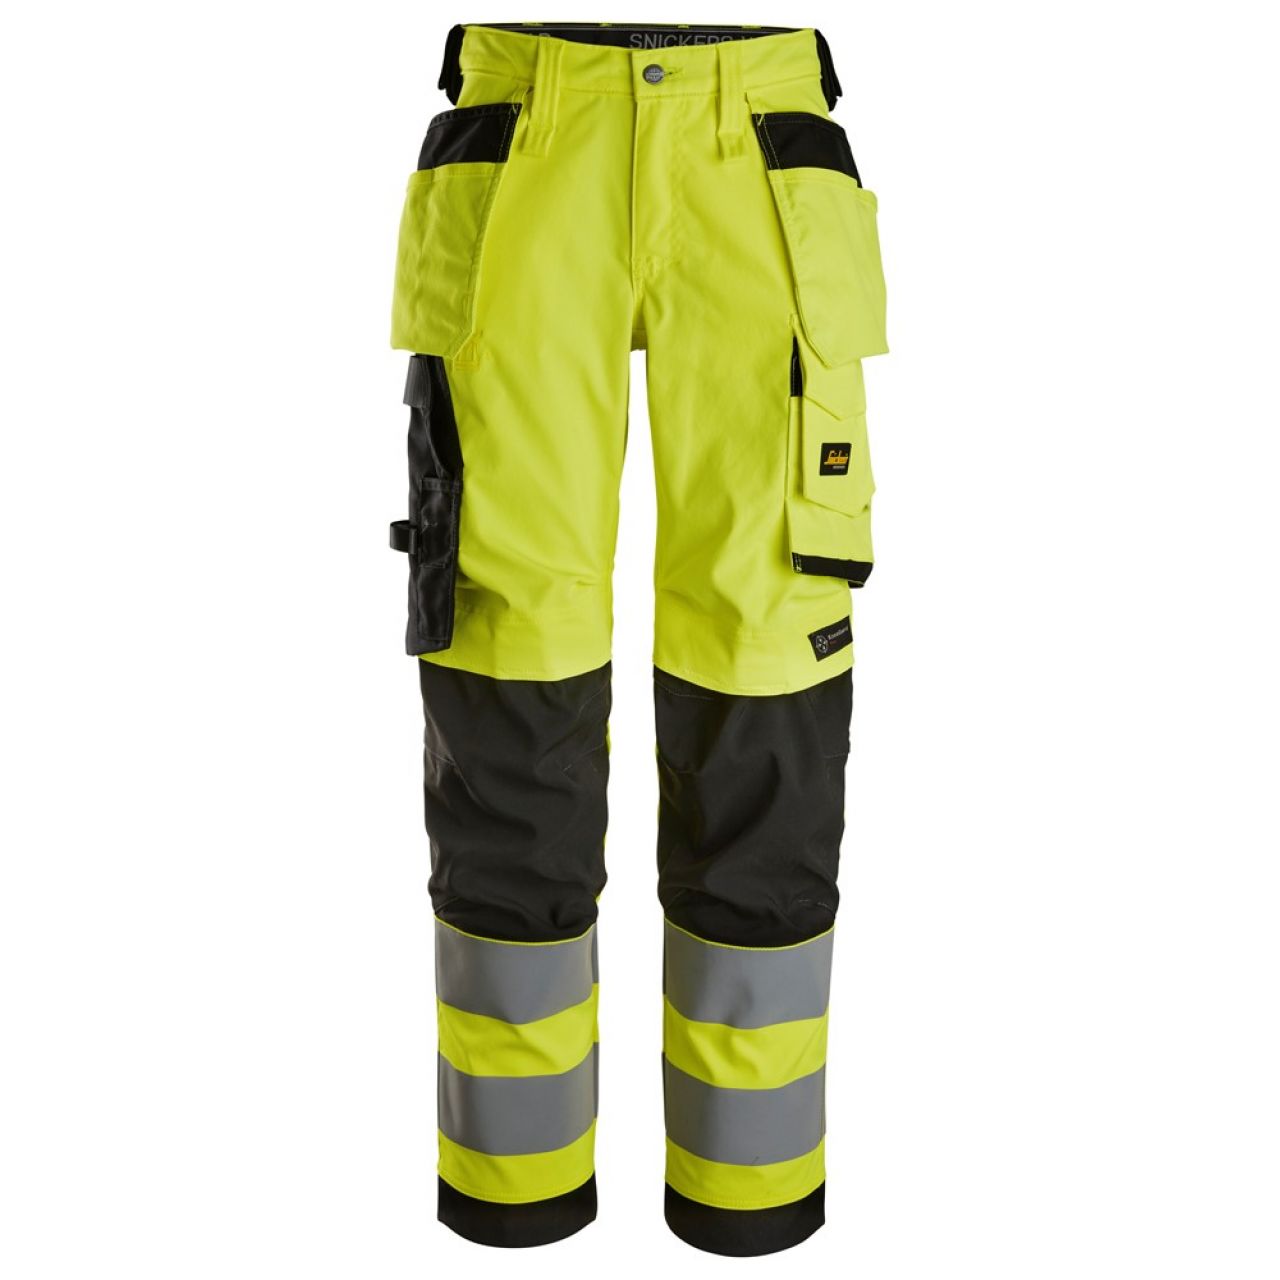 6743 Pantalones largos de trabajo elásticos de alta visibilidad clase 2 para mujer con bolsillos flotantes amarillo-negro talla 52